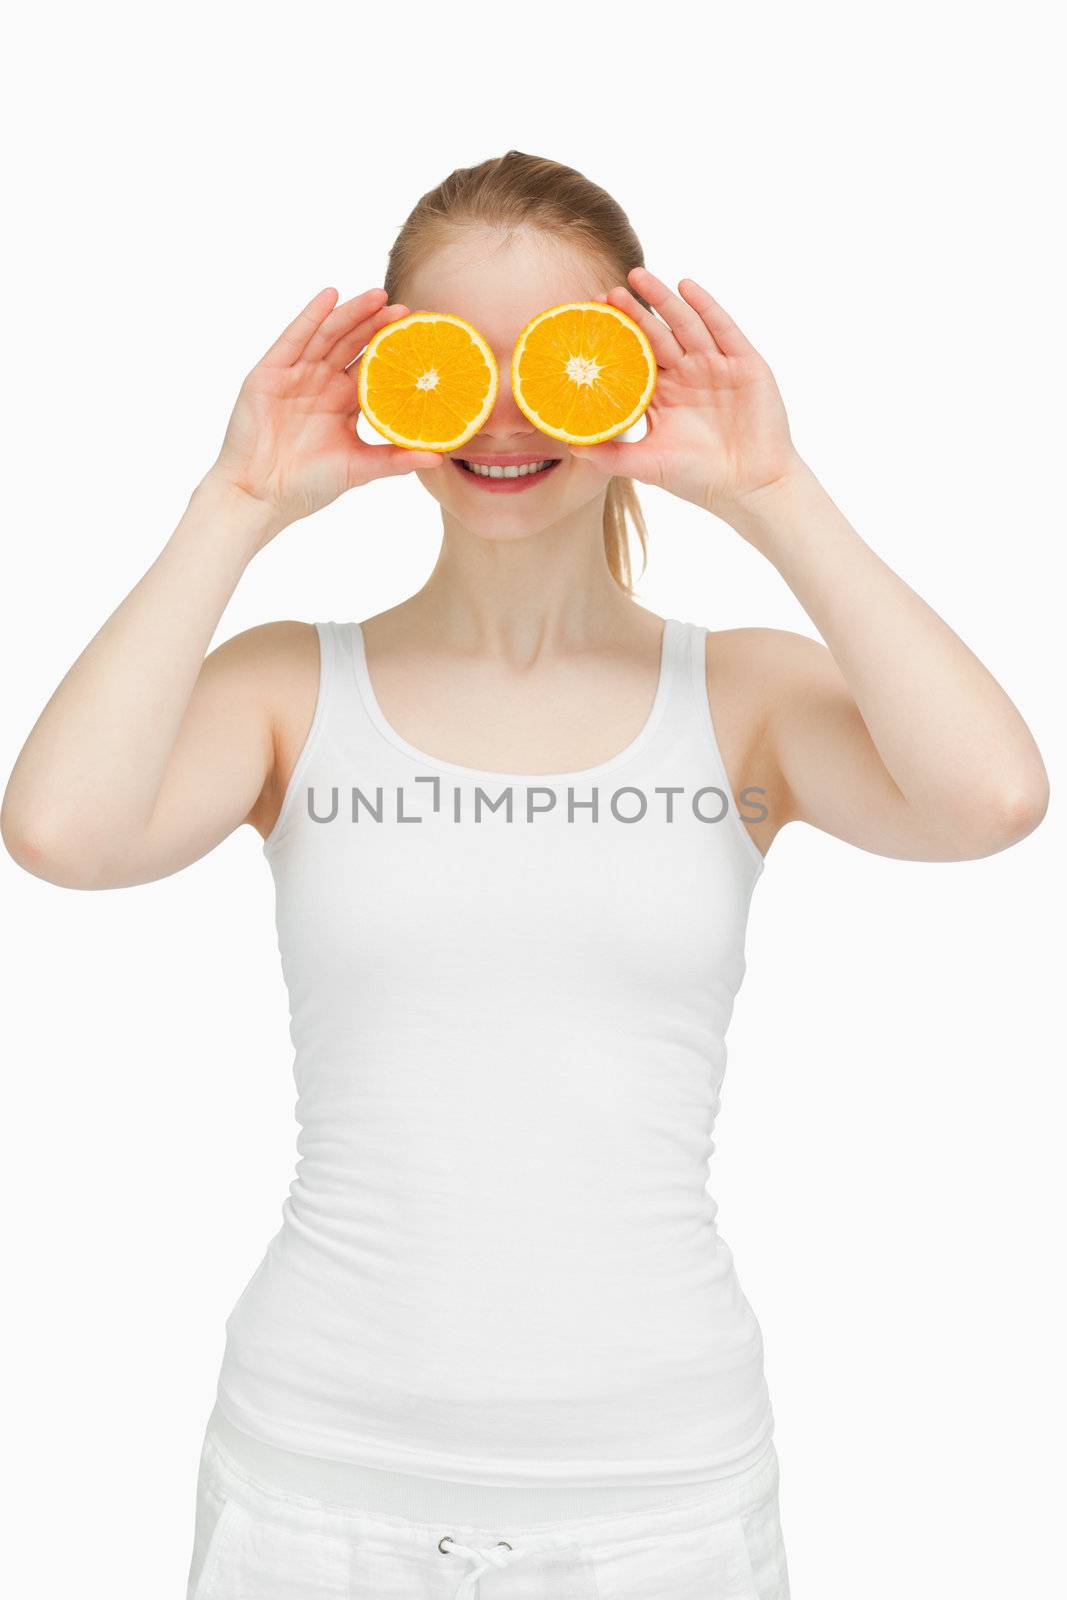 Joyful woman placing oranges on her eyes by Wavebreakmedia